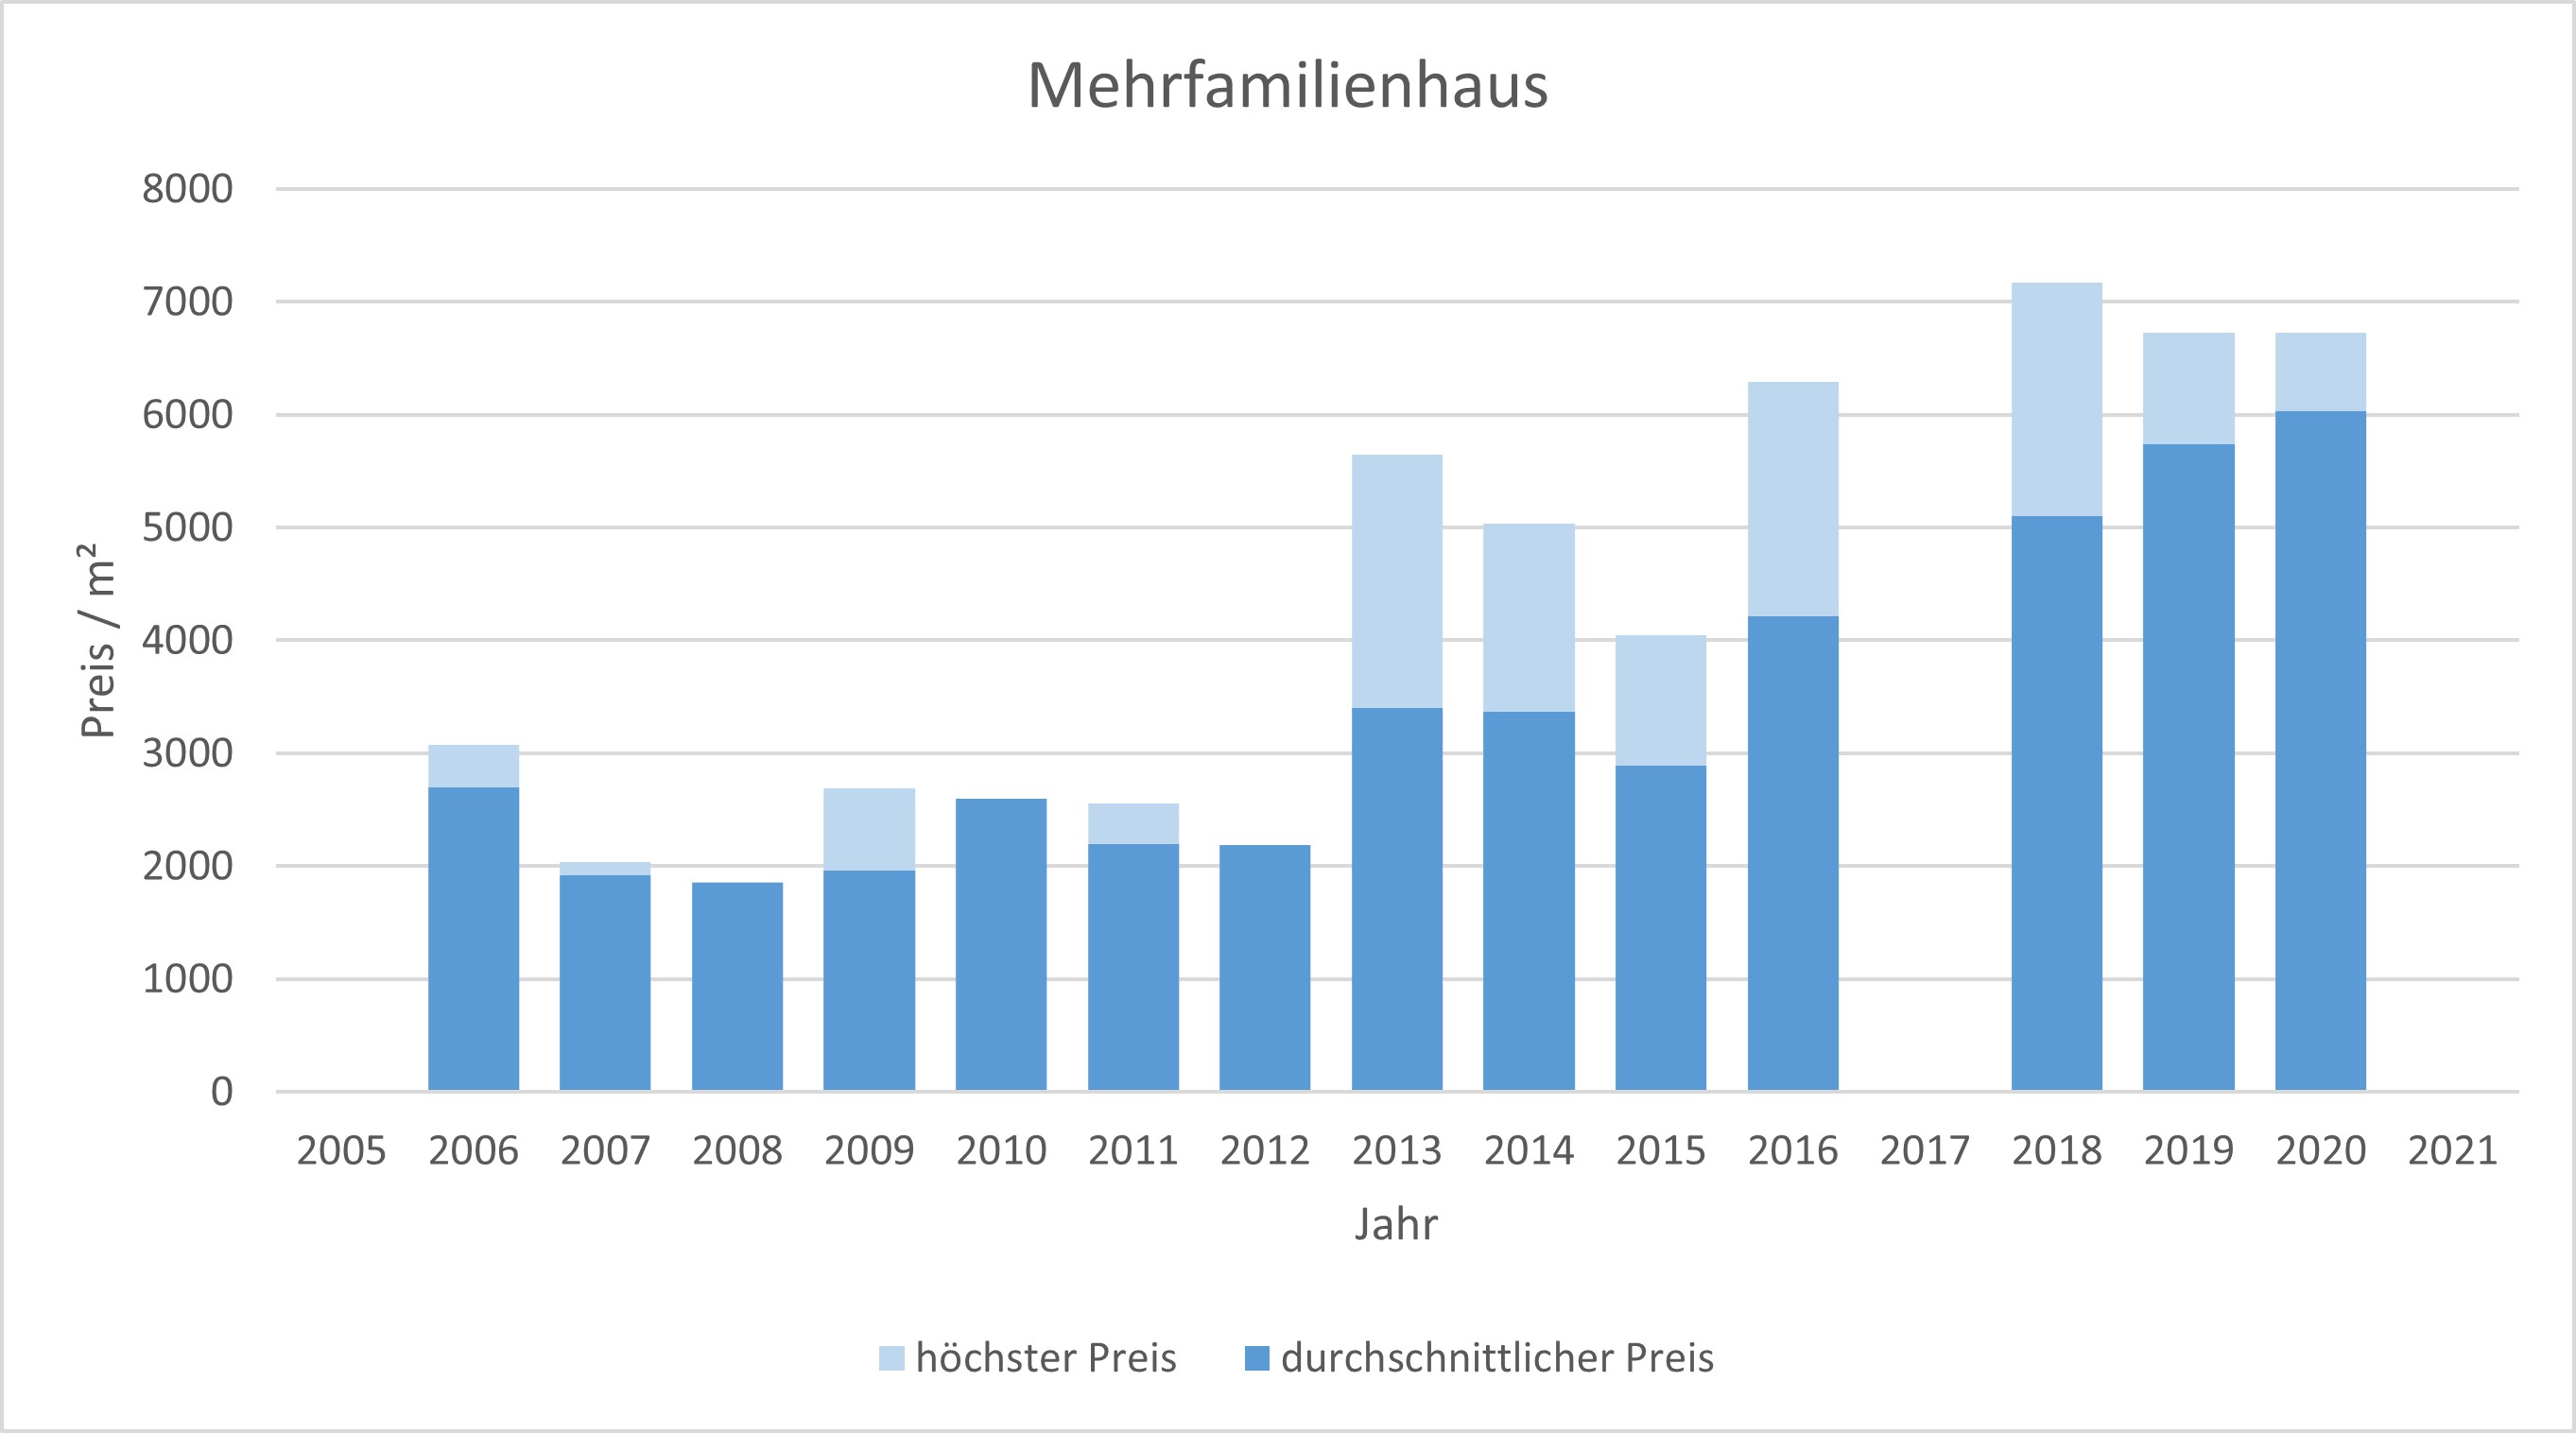 Egling Mehrfamilienhaus kaufen verkaufen Preis Bewertung Makler www.happy-immo.de 2019 2020 2021